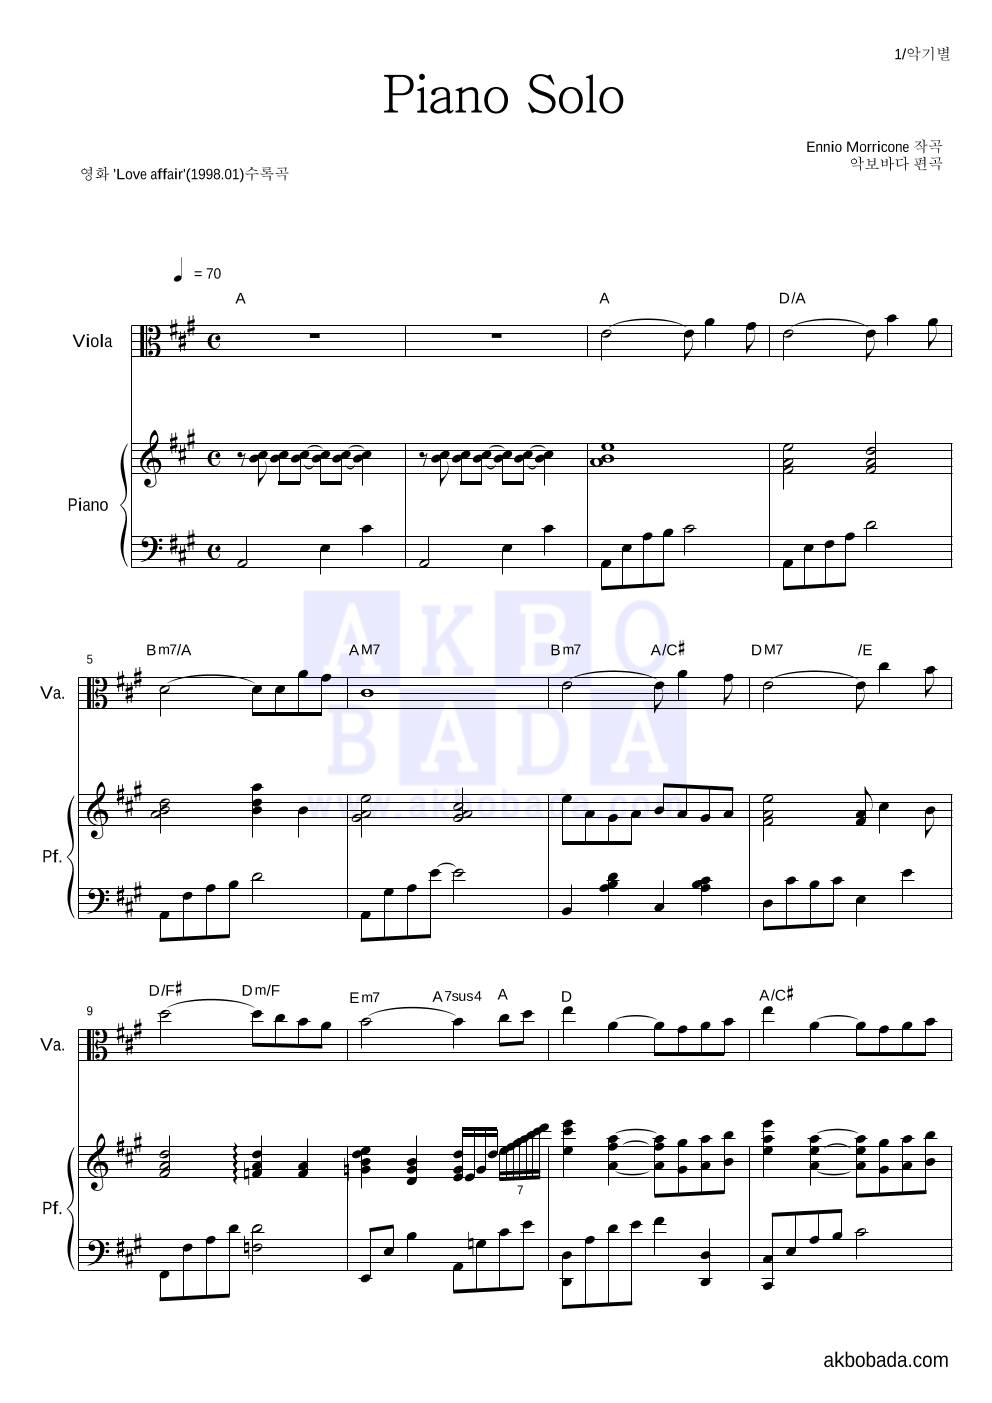 Ennio Morricone - Piano Solo 비올라&피아노 악보 